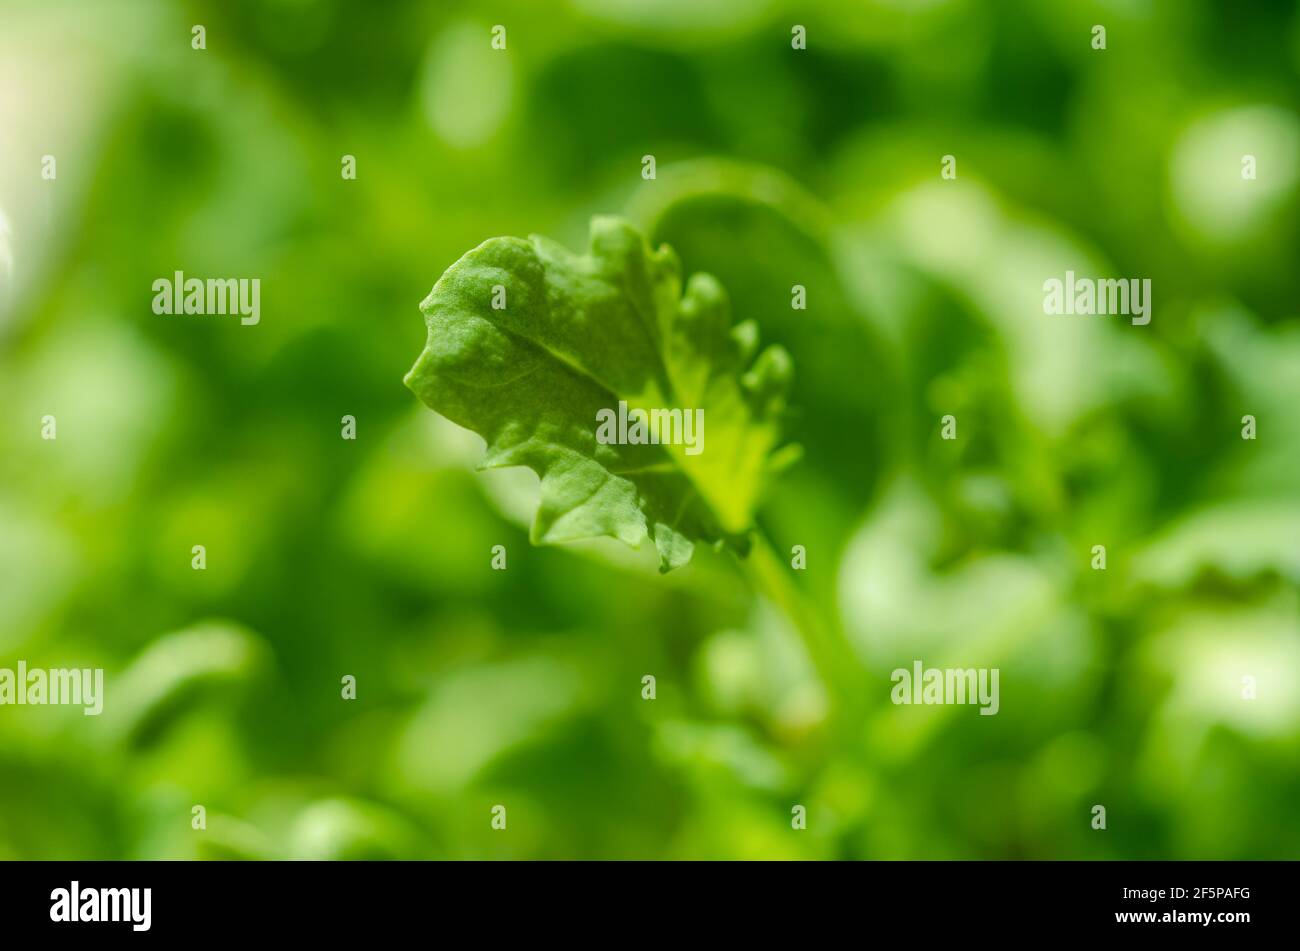 Kale-Blatt, Makrofoto. Wachsende grünen Trieb und Mikrogrün von Blattkohl, Keimling und junge Pflanze. Bereit zu essen, gekeimt lockiges Blatt Grünkohl. Stockfoto